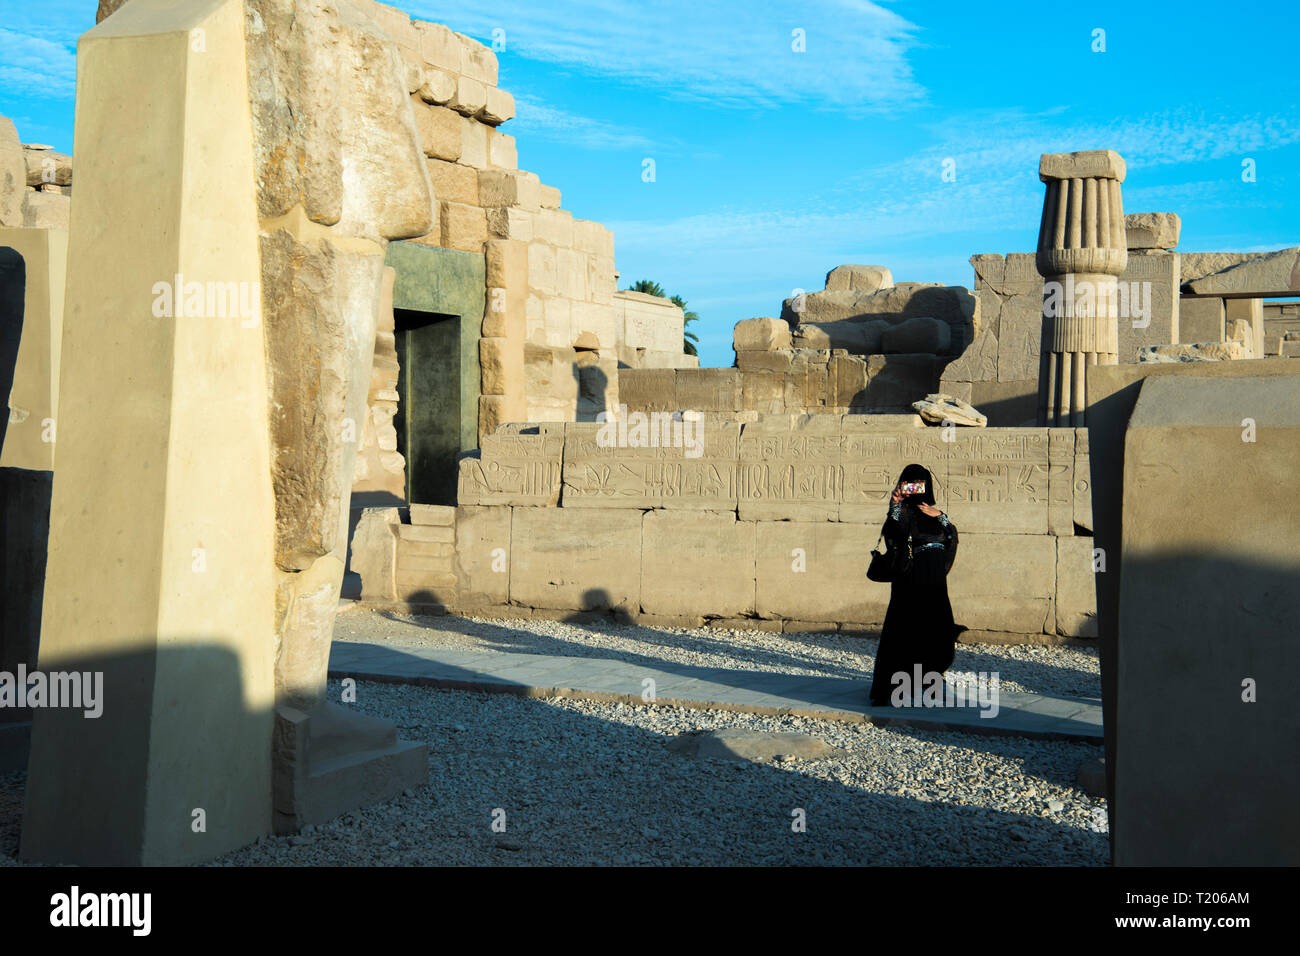 Ägypten, Luxor, Karnak-Tempel, Säulensaal des Thutmosis I. hinter dem 5. Pilono Foto de stock